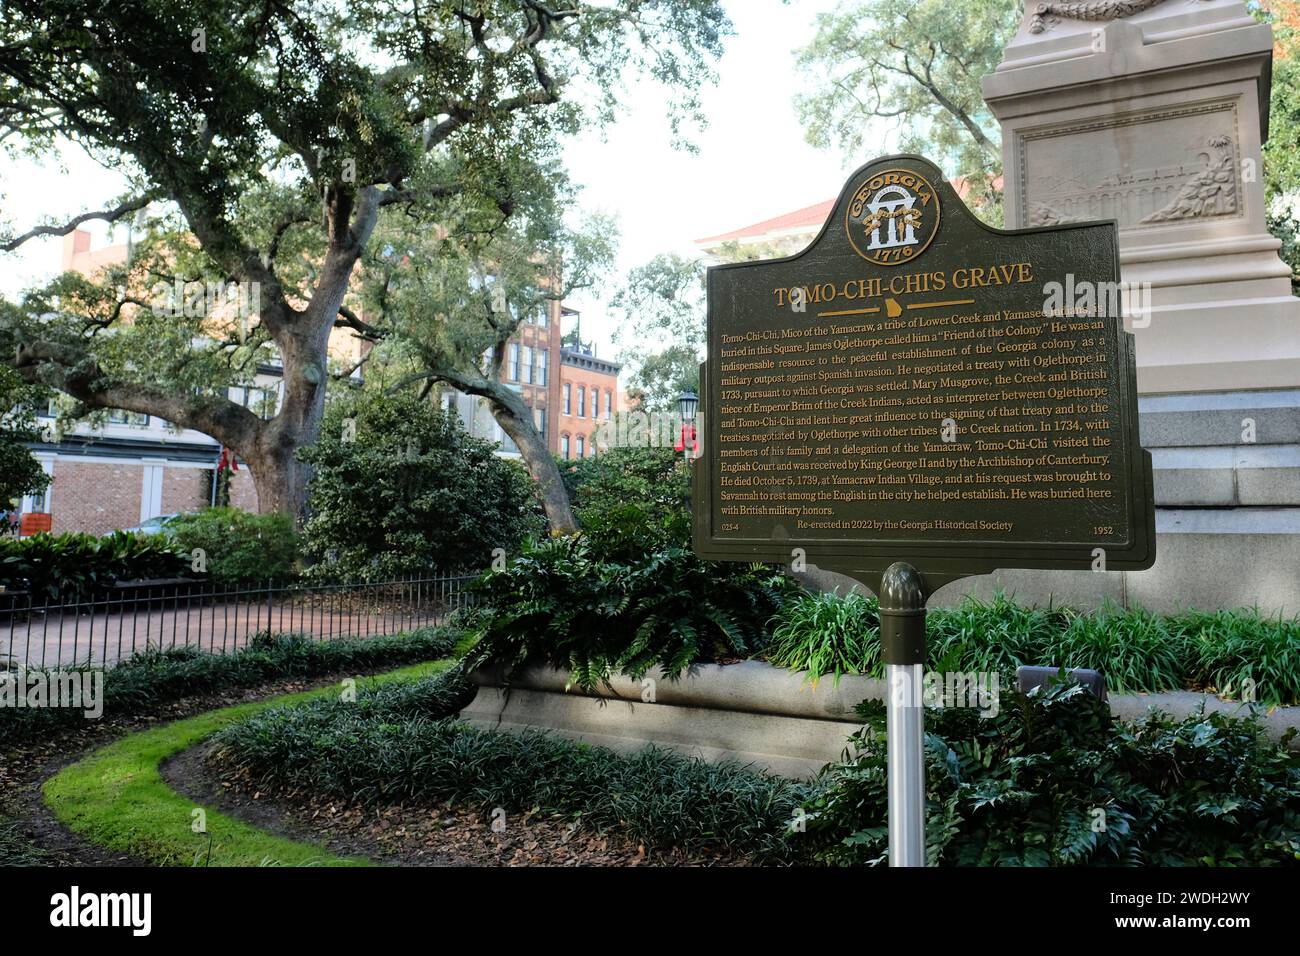 Tomo Chi Chi Monument und Grabstätte; Wright Square, Savannah, Georgia; Schild mit Text, der seinen Beitrag zur kolonialen Geschichte Georgiens anerkennt. Stockfoto